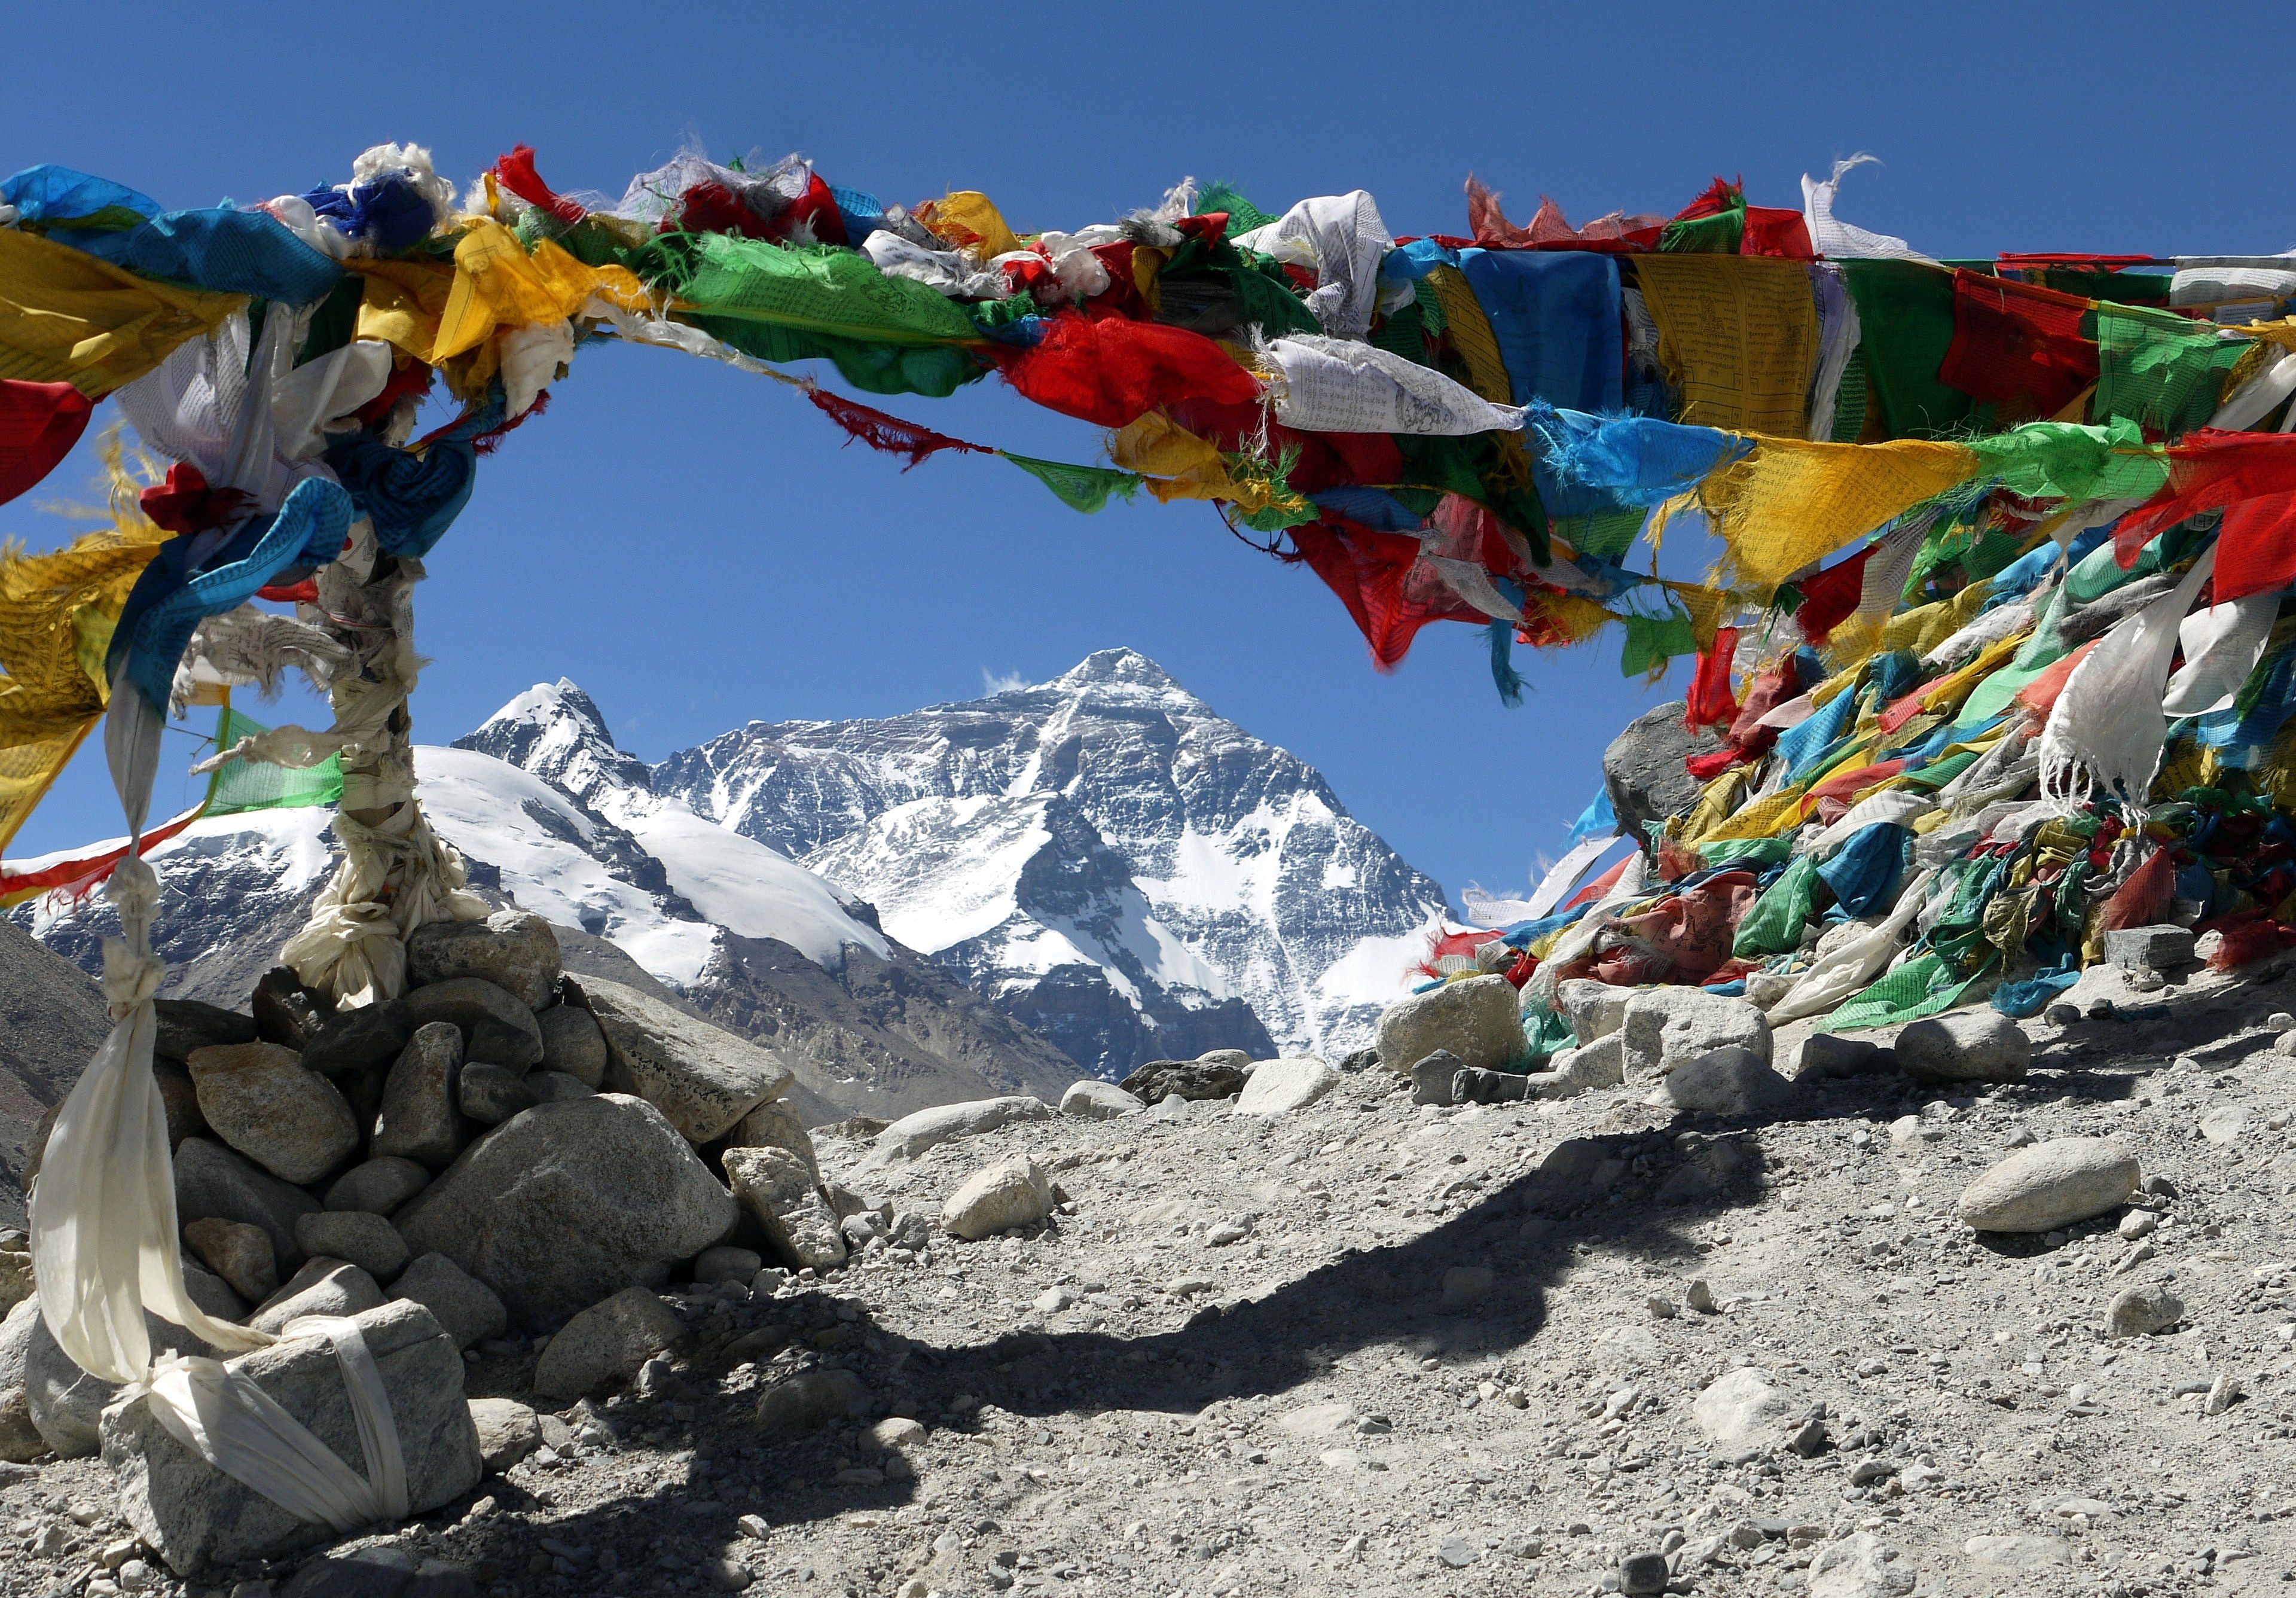 Kala Pattar et camp de base de l'Everest